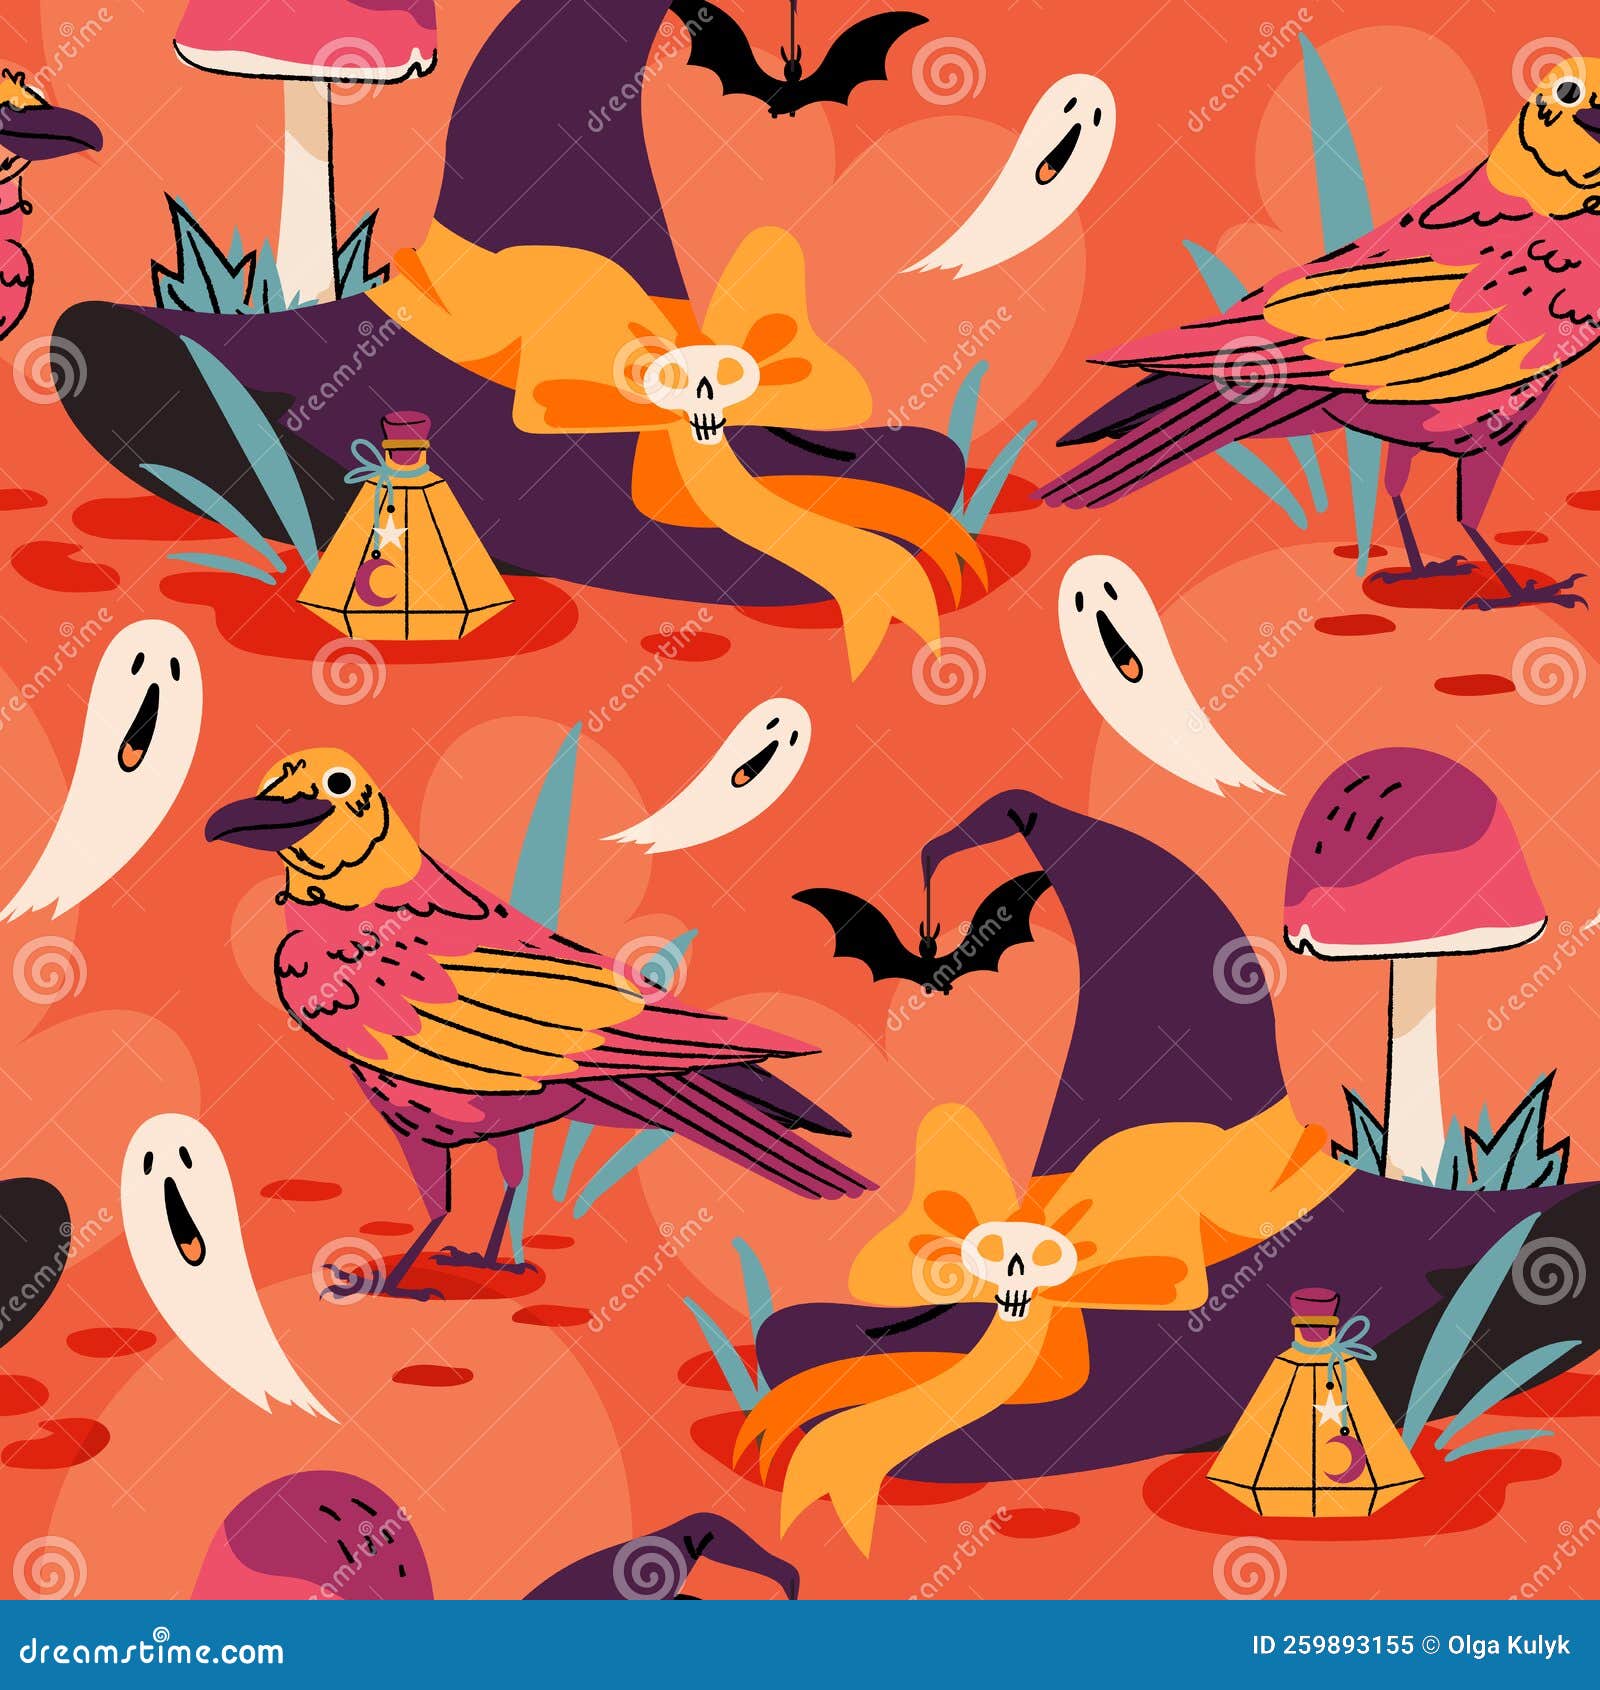 Fofo Vetor De Bruxas Sem Descontinuidades Do Halloween Com Desenho